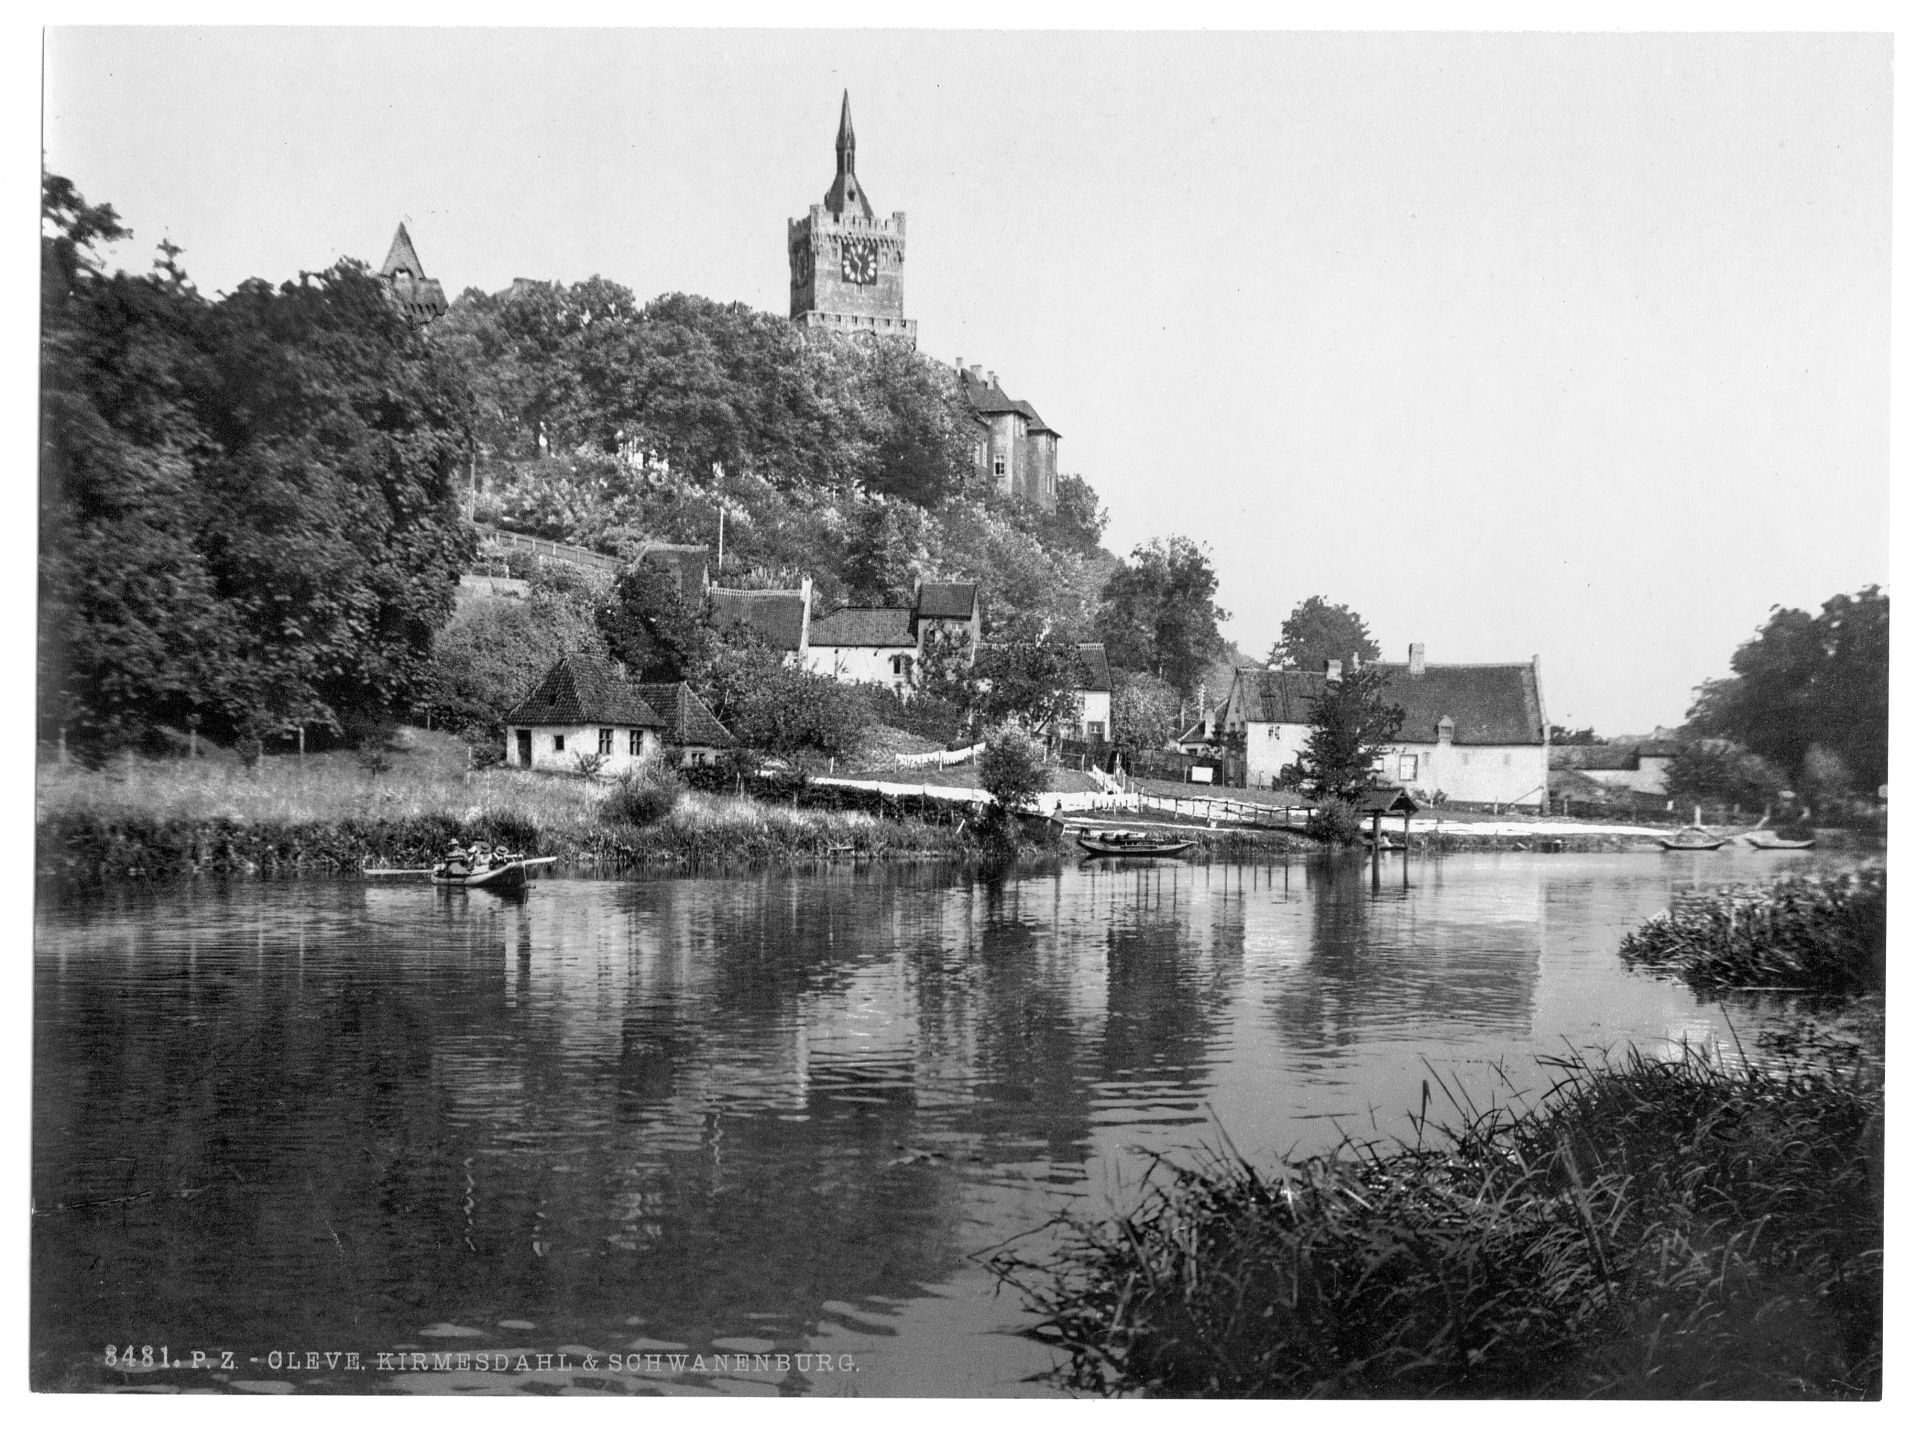 Kirmesdahl and Schwanenburg, Cleves, Westphalia, Germany